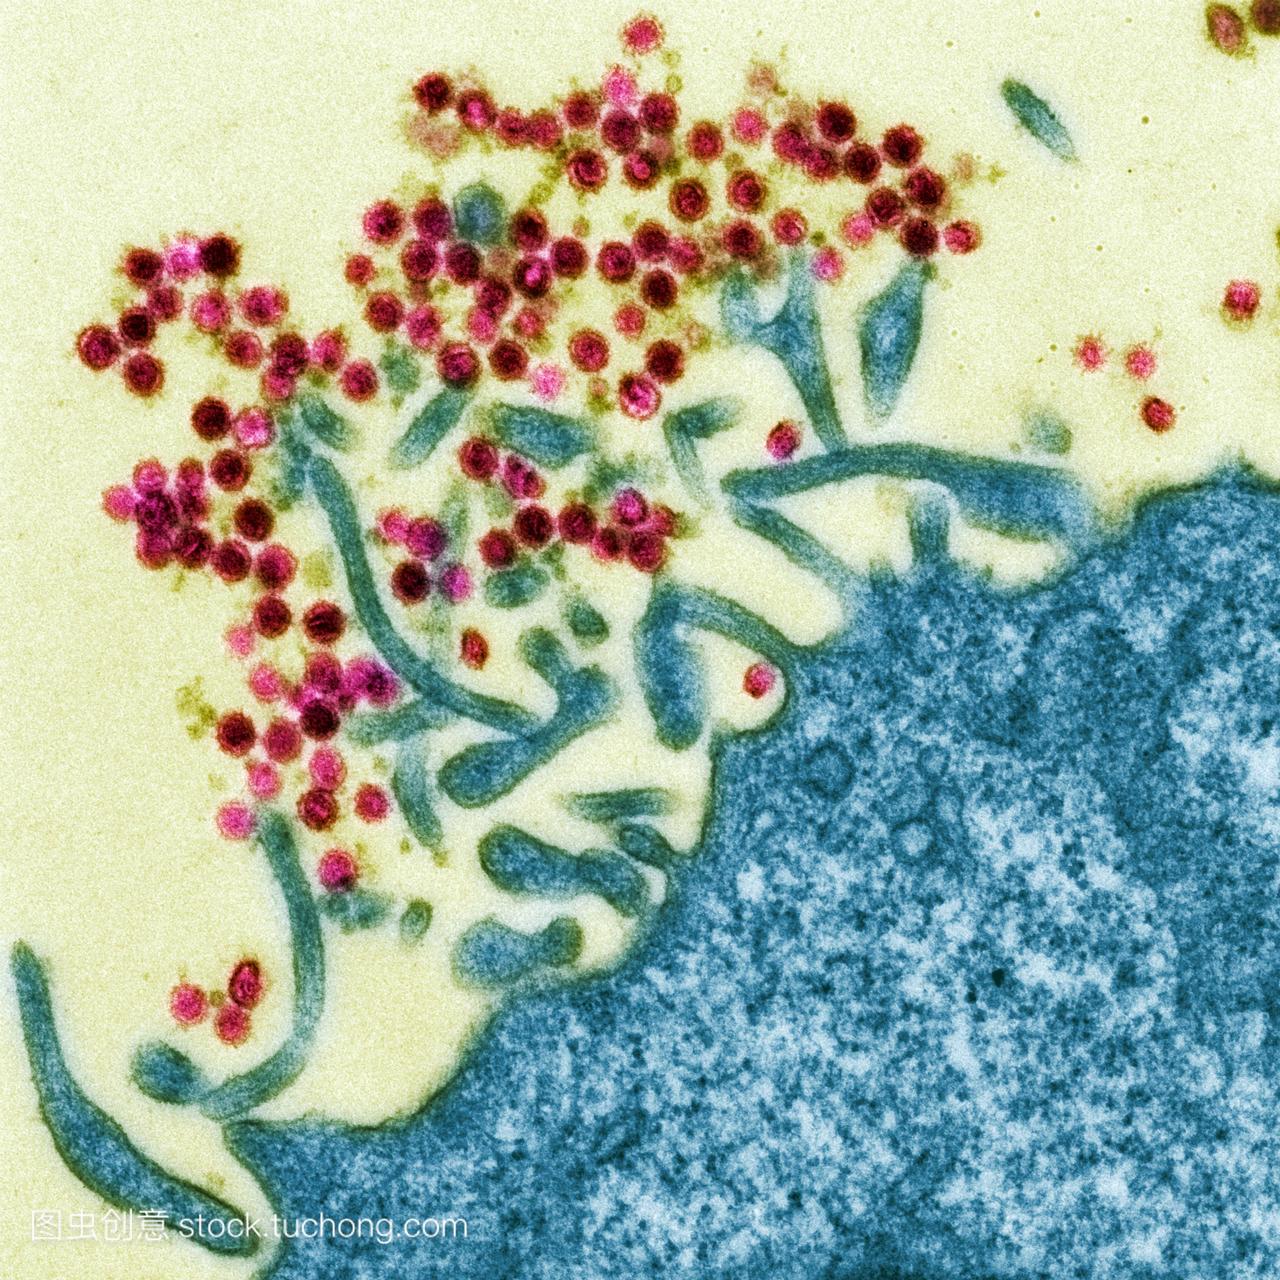 小鼠白血病病毒。细胞外的彩色透射电子显微镜